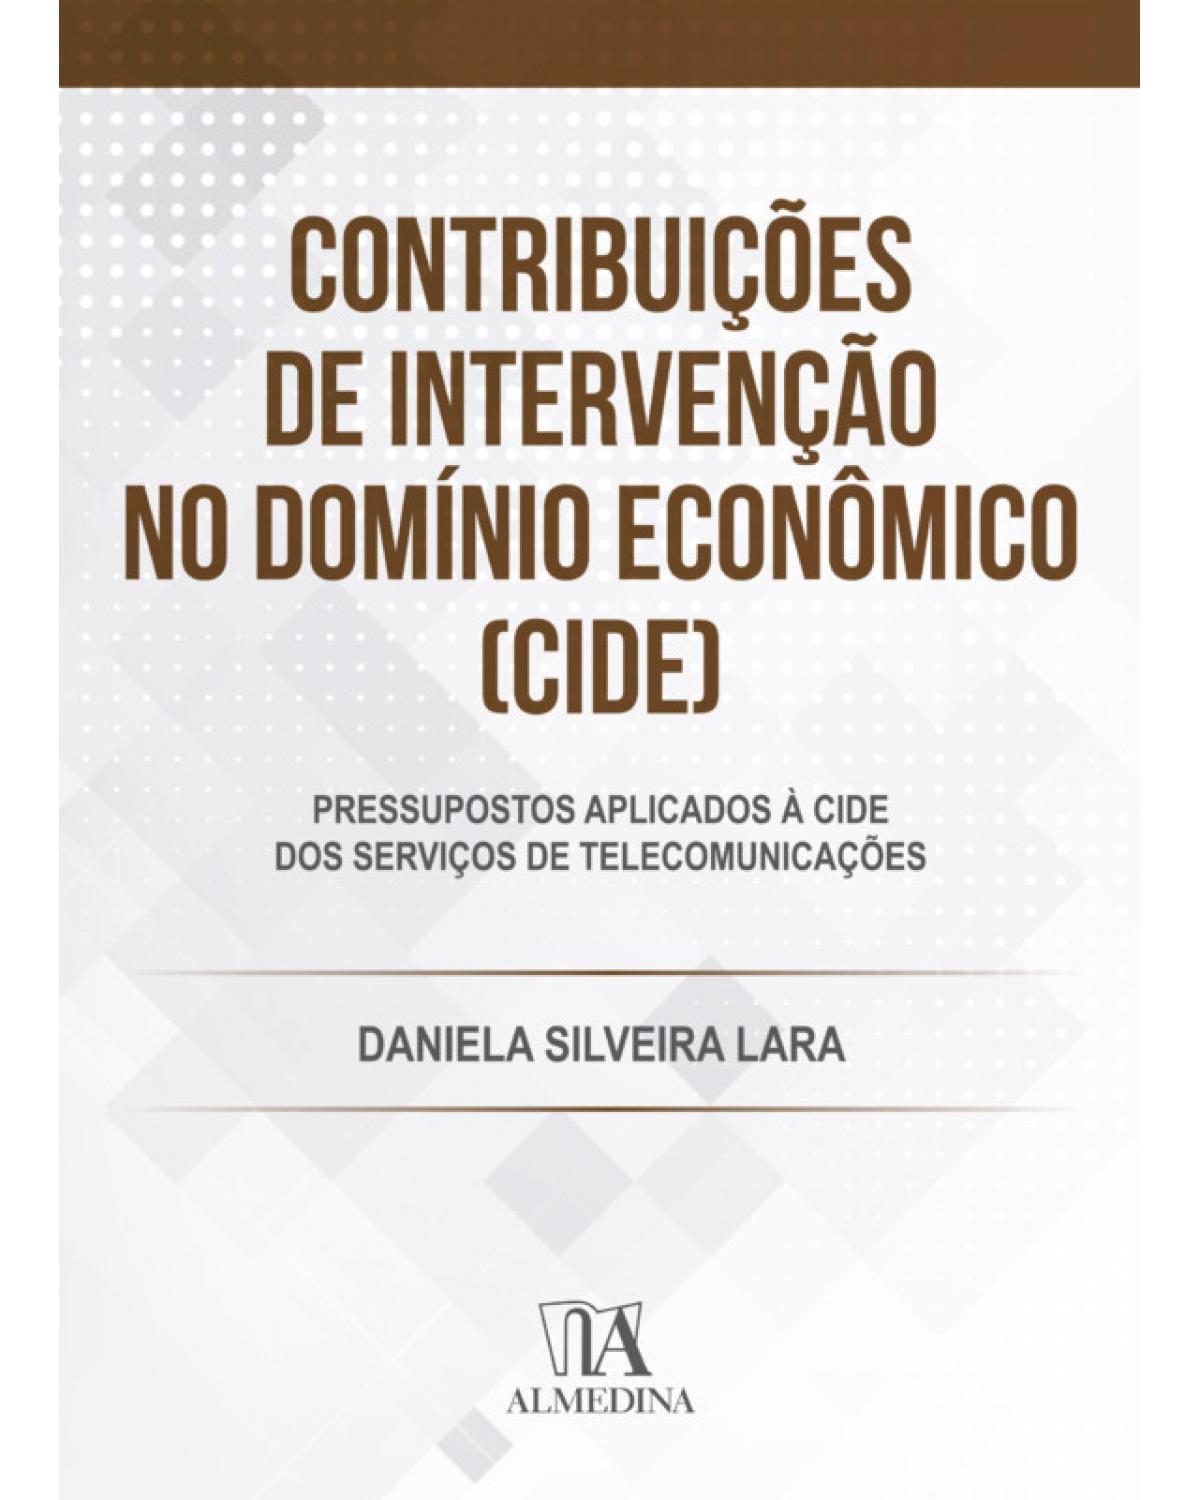 Contribuições de Intervenção no Domínio Econômico (CIDE) - pressupostos aplicados à CIDE dos serviços de telecomunicações - 1ª Edição | 2019